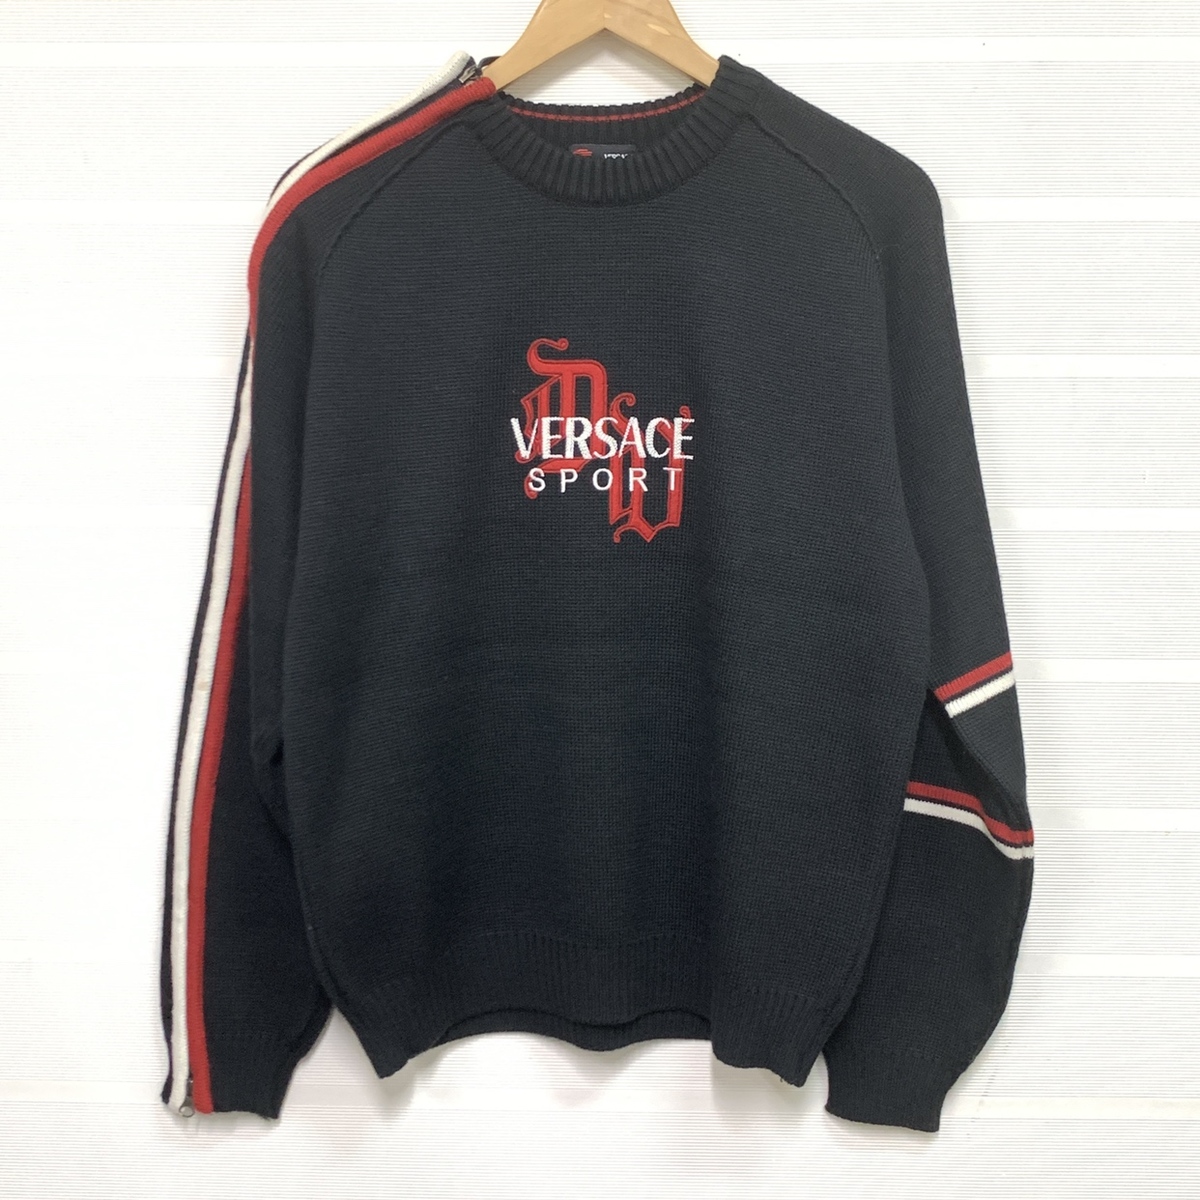 ヴェルサーチェのスポーツの ロゴ刺繍 サイドジップデザイン ニットセーターの買取実績です。